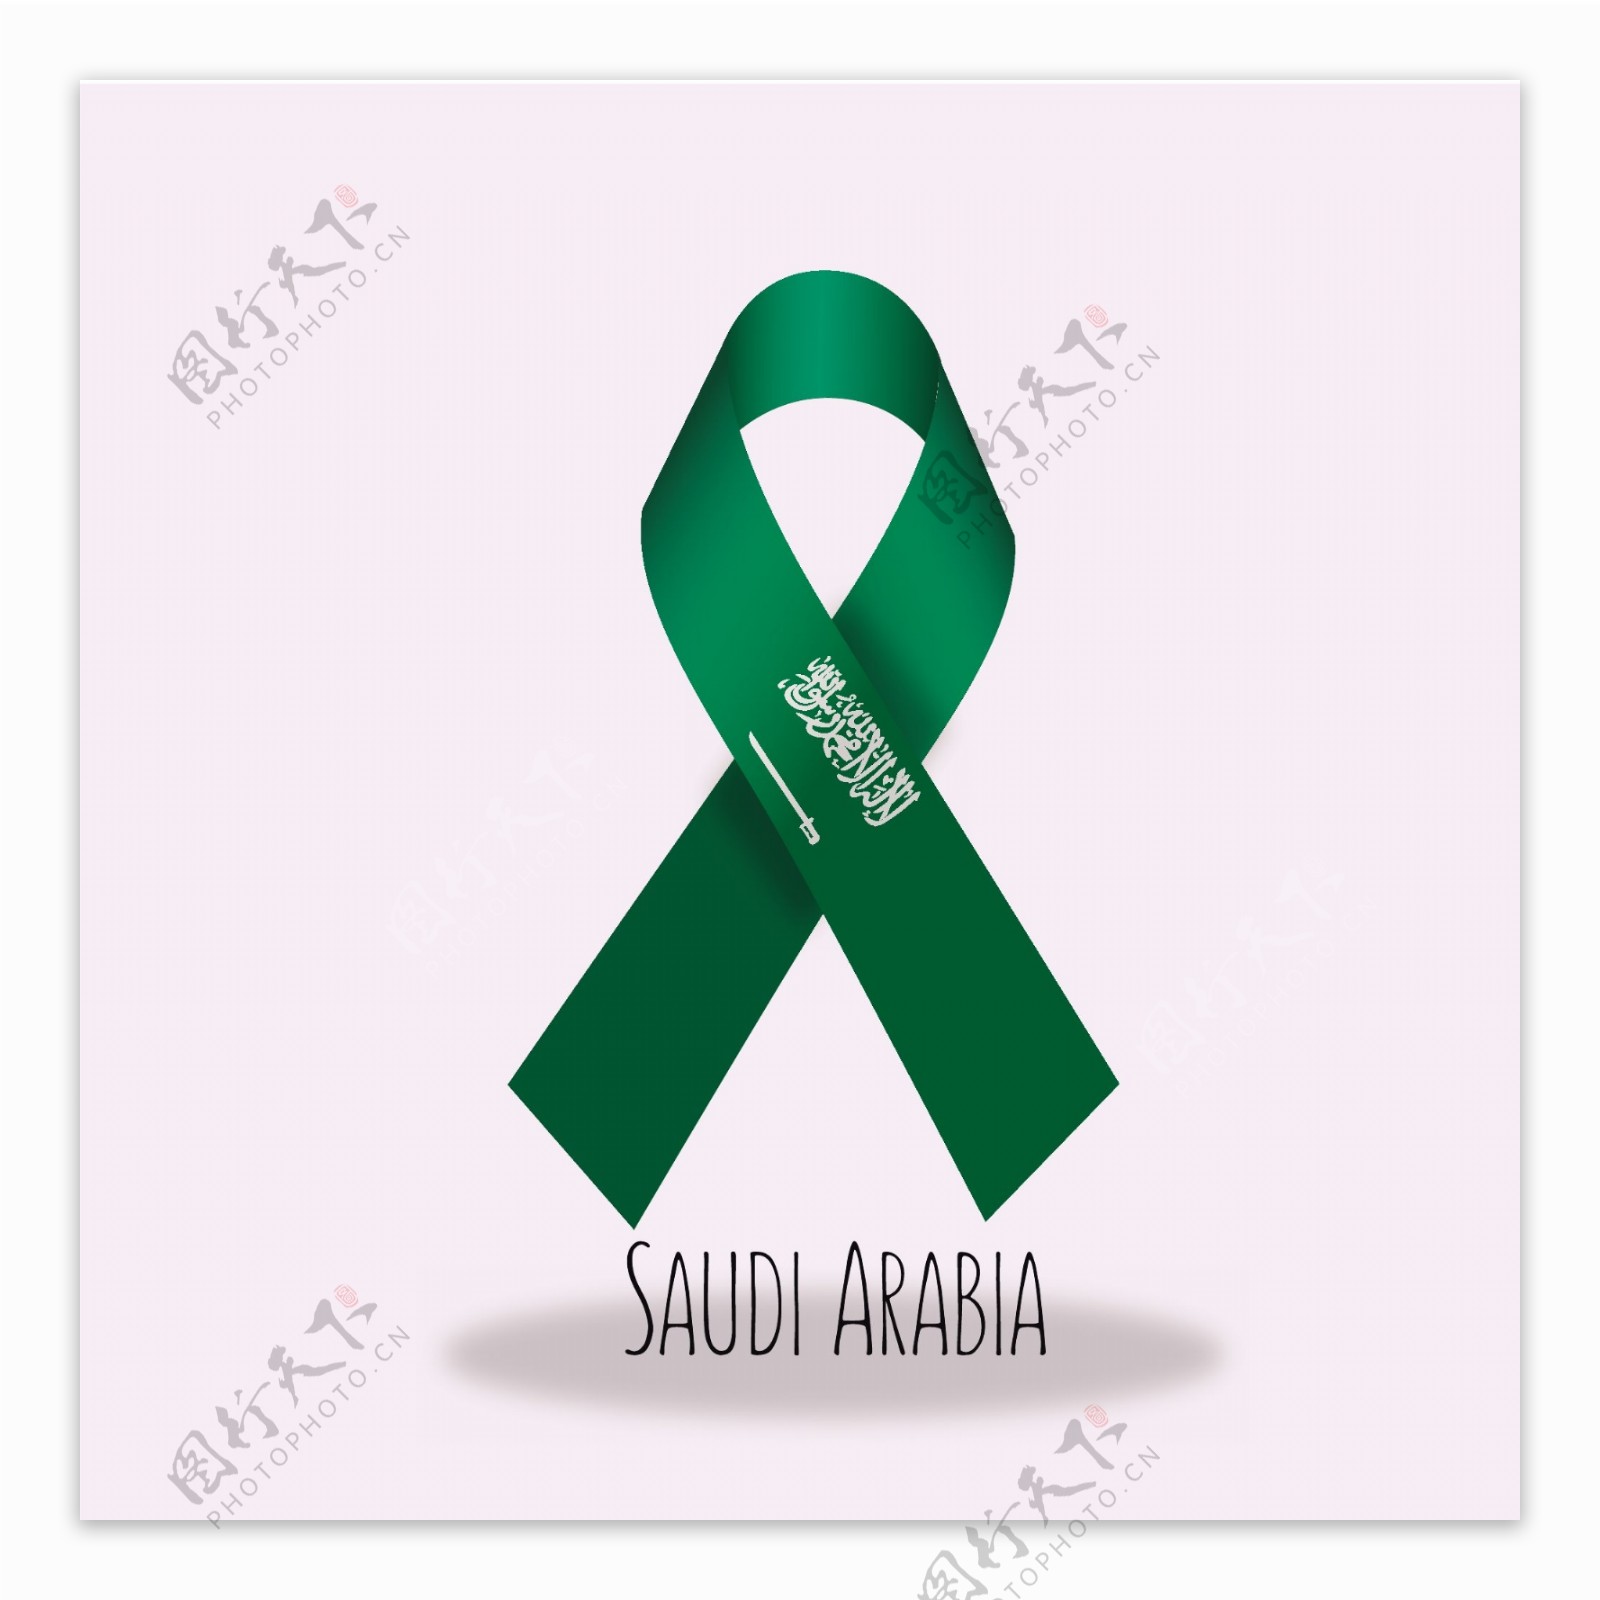 沙特阿拉伯国旗丝带设计矢量素材